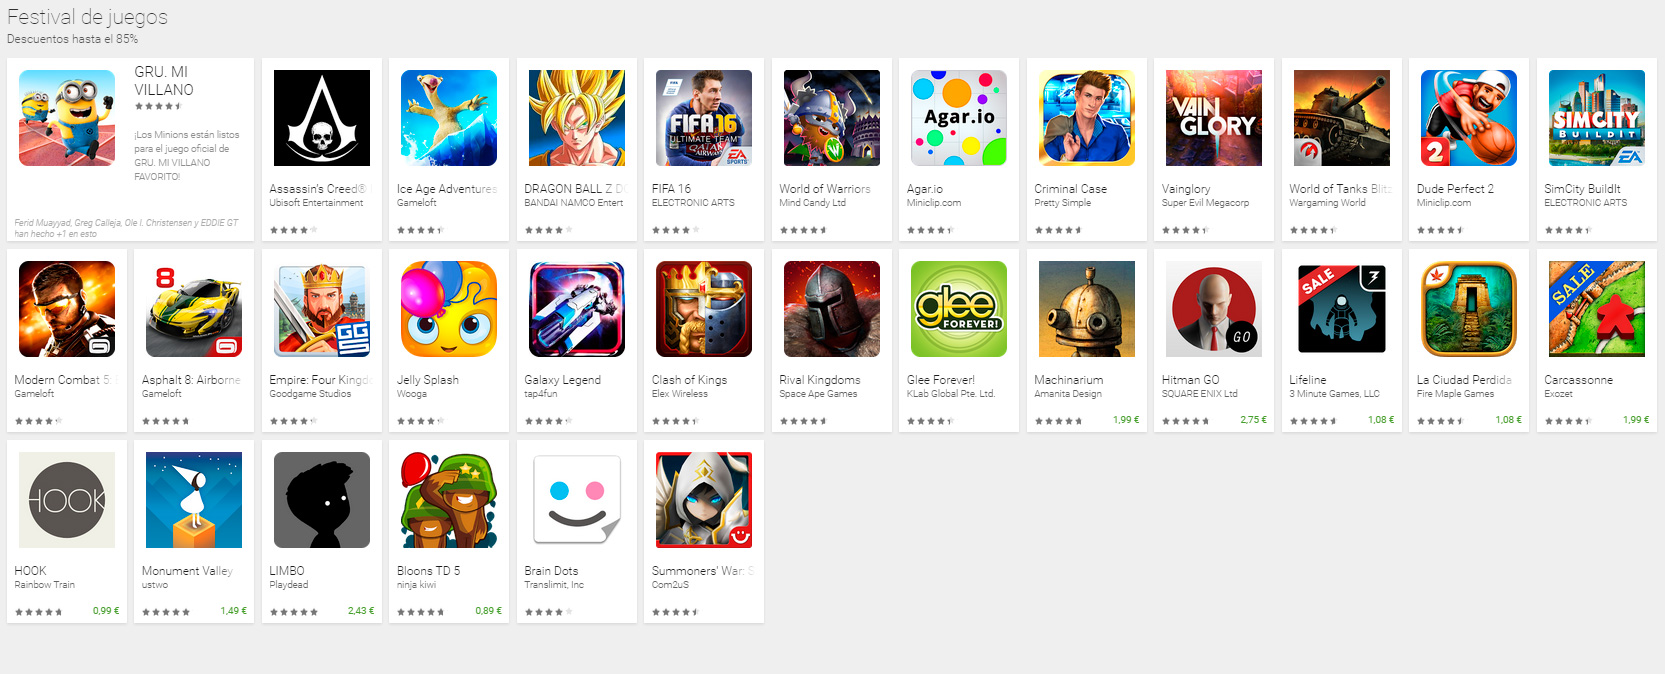 El Jugón De Móvil - Festival de juegos de Google Play